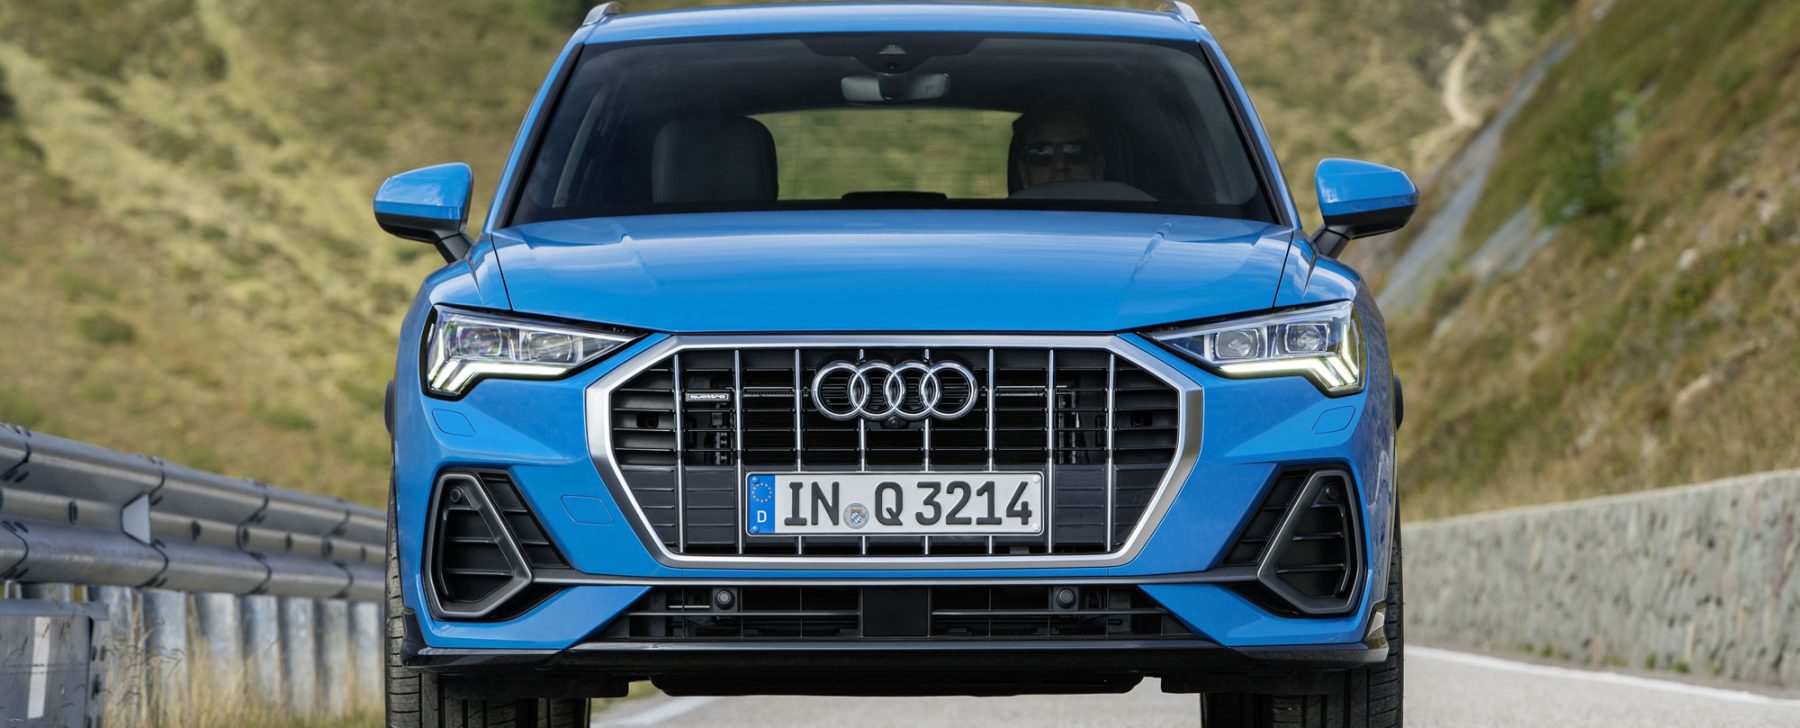 Audi-Q3_Turbo-Blue_006-1800x728.jpg